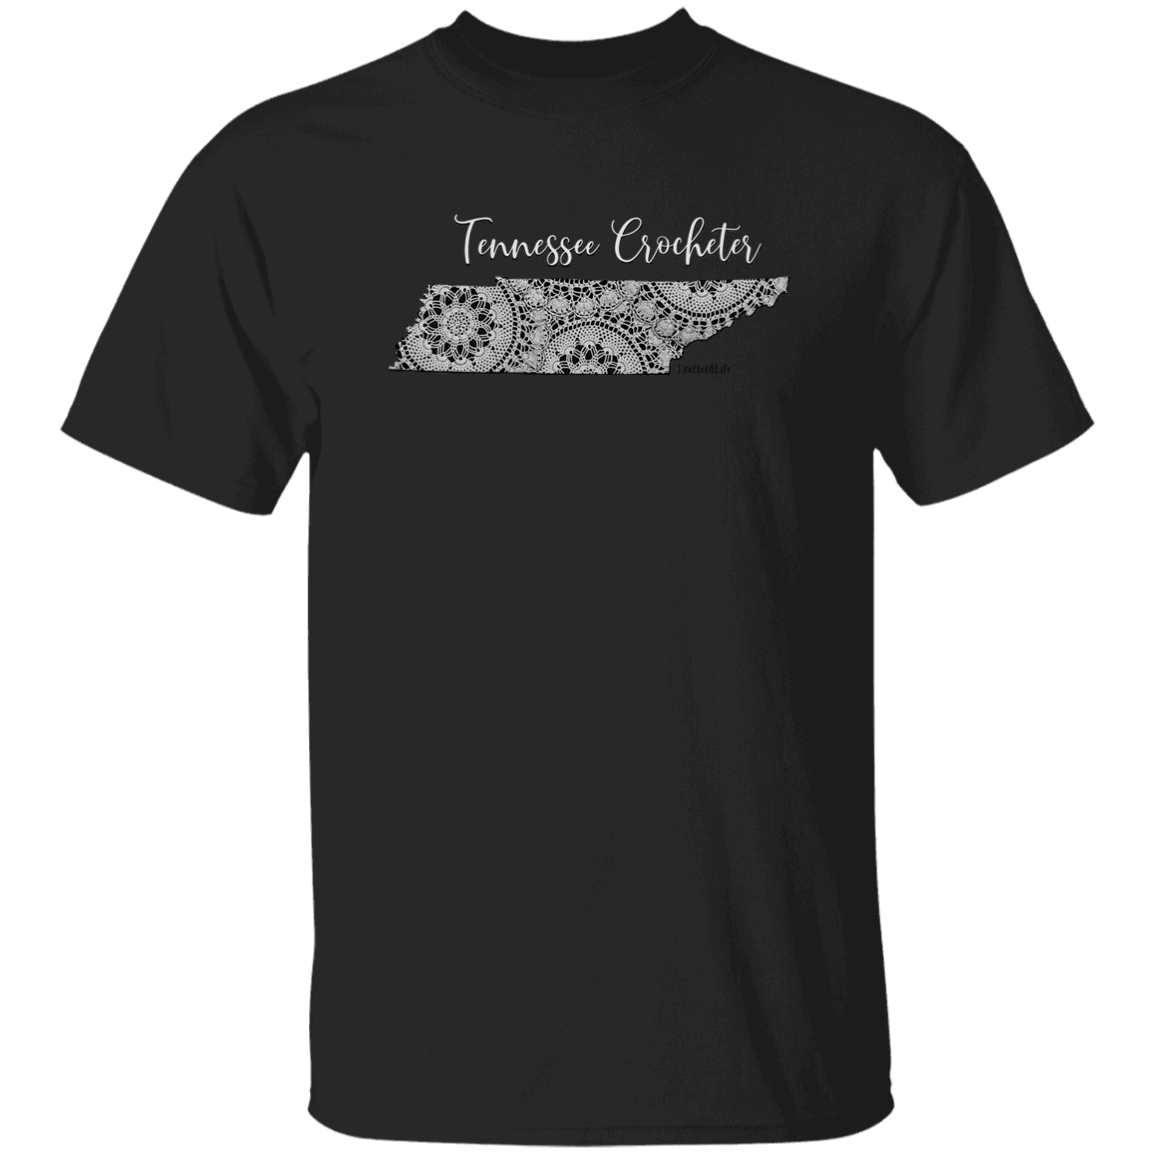 Tennessee Crocheter T-Shirt